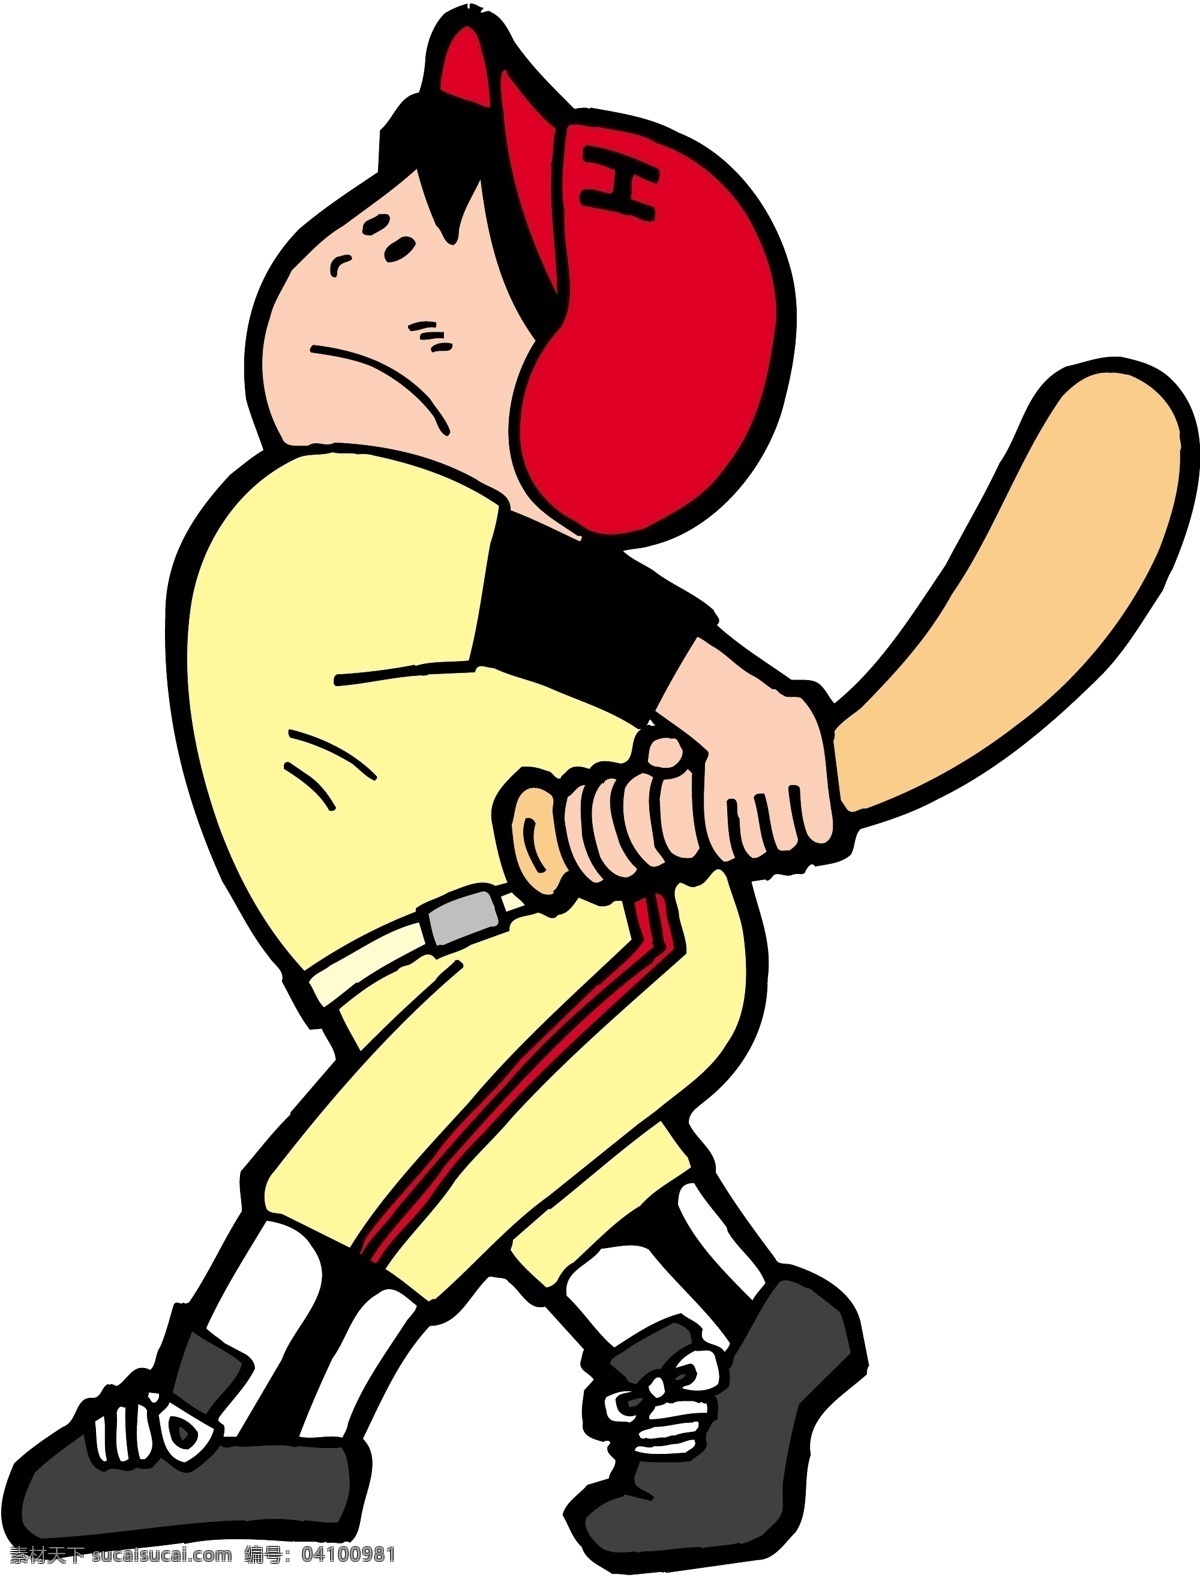 卡通运动人物 棒球 表情 健身 卡通 卡通表情 卡通人物 男孩 努力 拼搏 体育运动 体育项目 中国棒球 学生 帽子卡通小孩 打棒球 卡通棒球 运动卡通 矢量卡通 矢量 其他人物 矢量人物